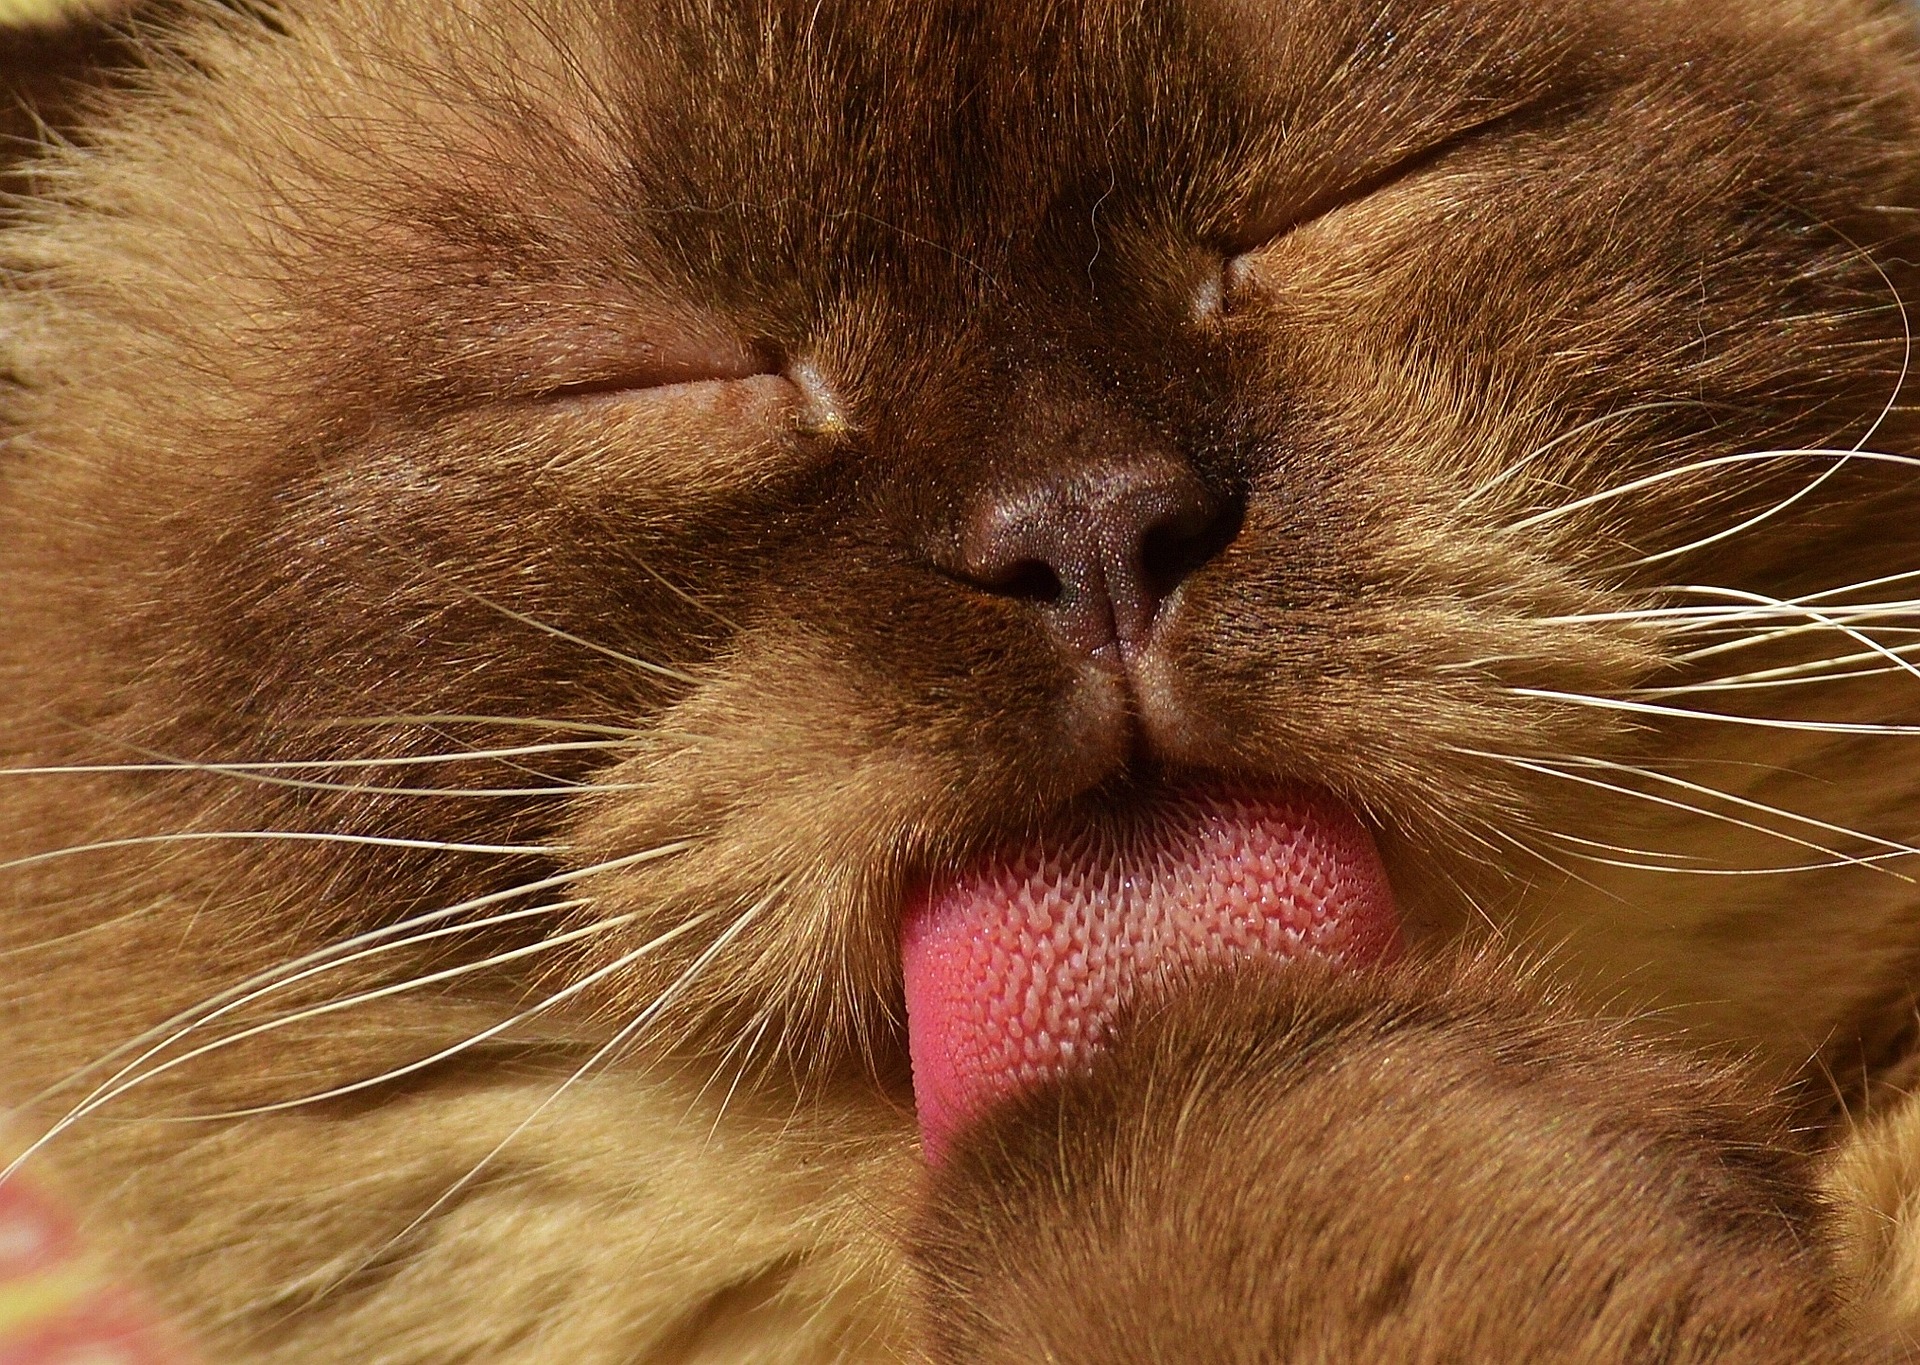 Die Zunge der Katze hat grobe Vorsprünge, dank derer die Katze ihre Hygiene aufrechterhalten und ihr Fell kämmen kann.